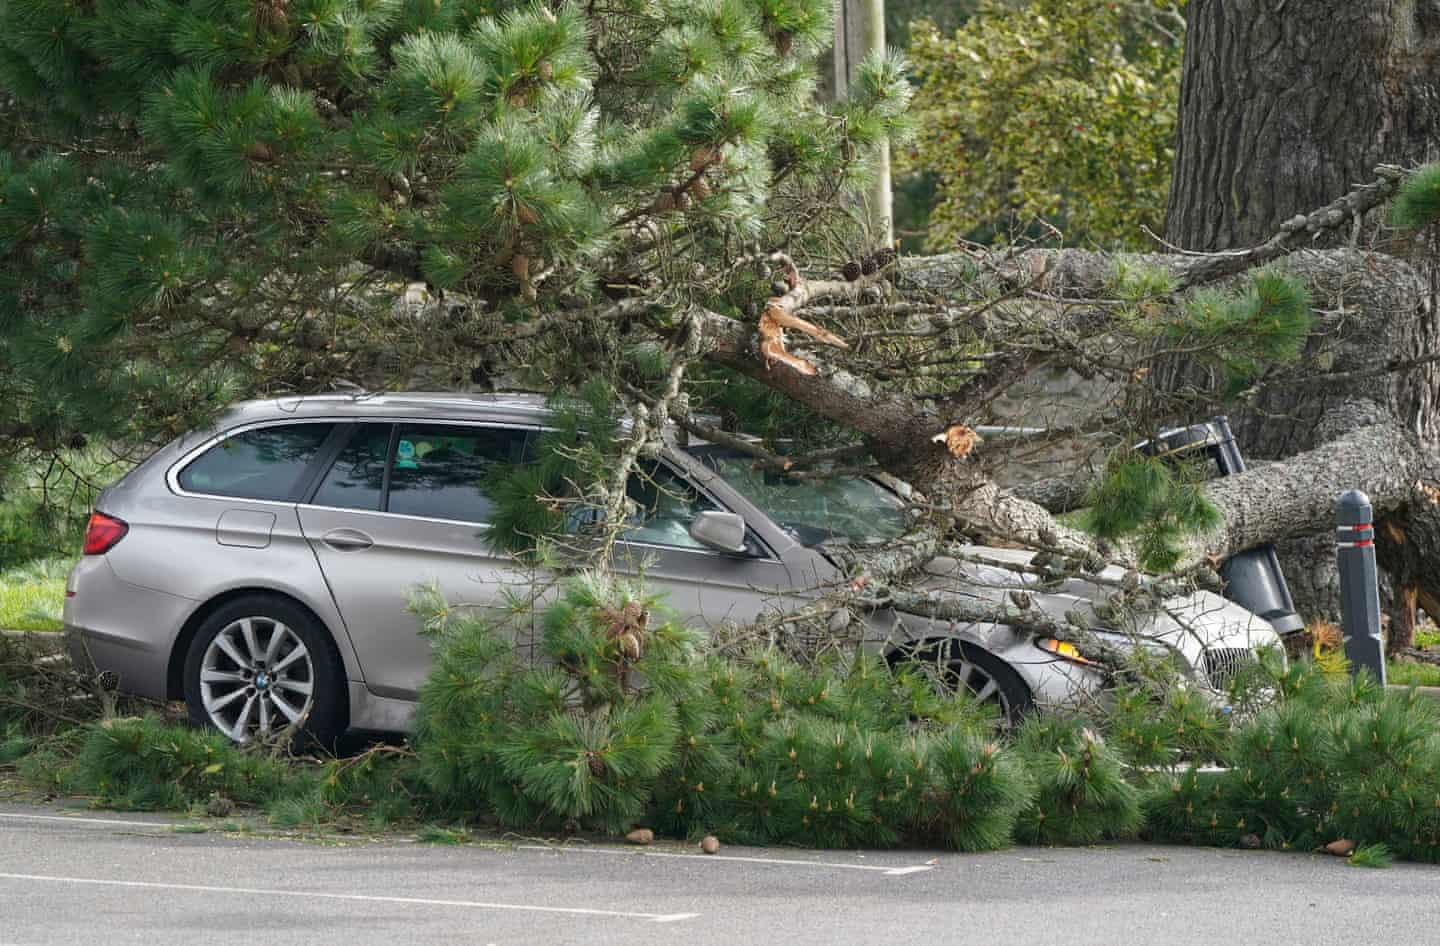 Một cành cây rơi trúng chiếc xe trong bãi đậu. Ảnh: Andrew Matthews / PA.